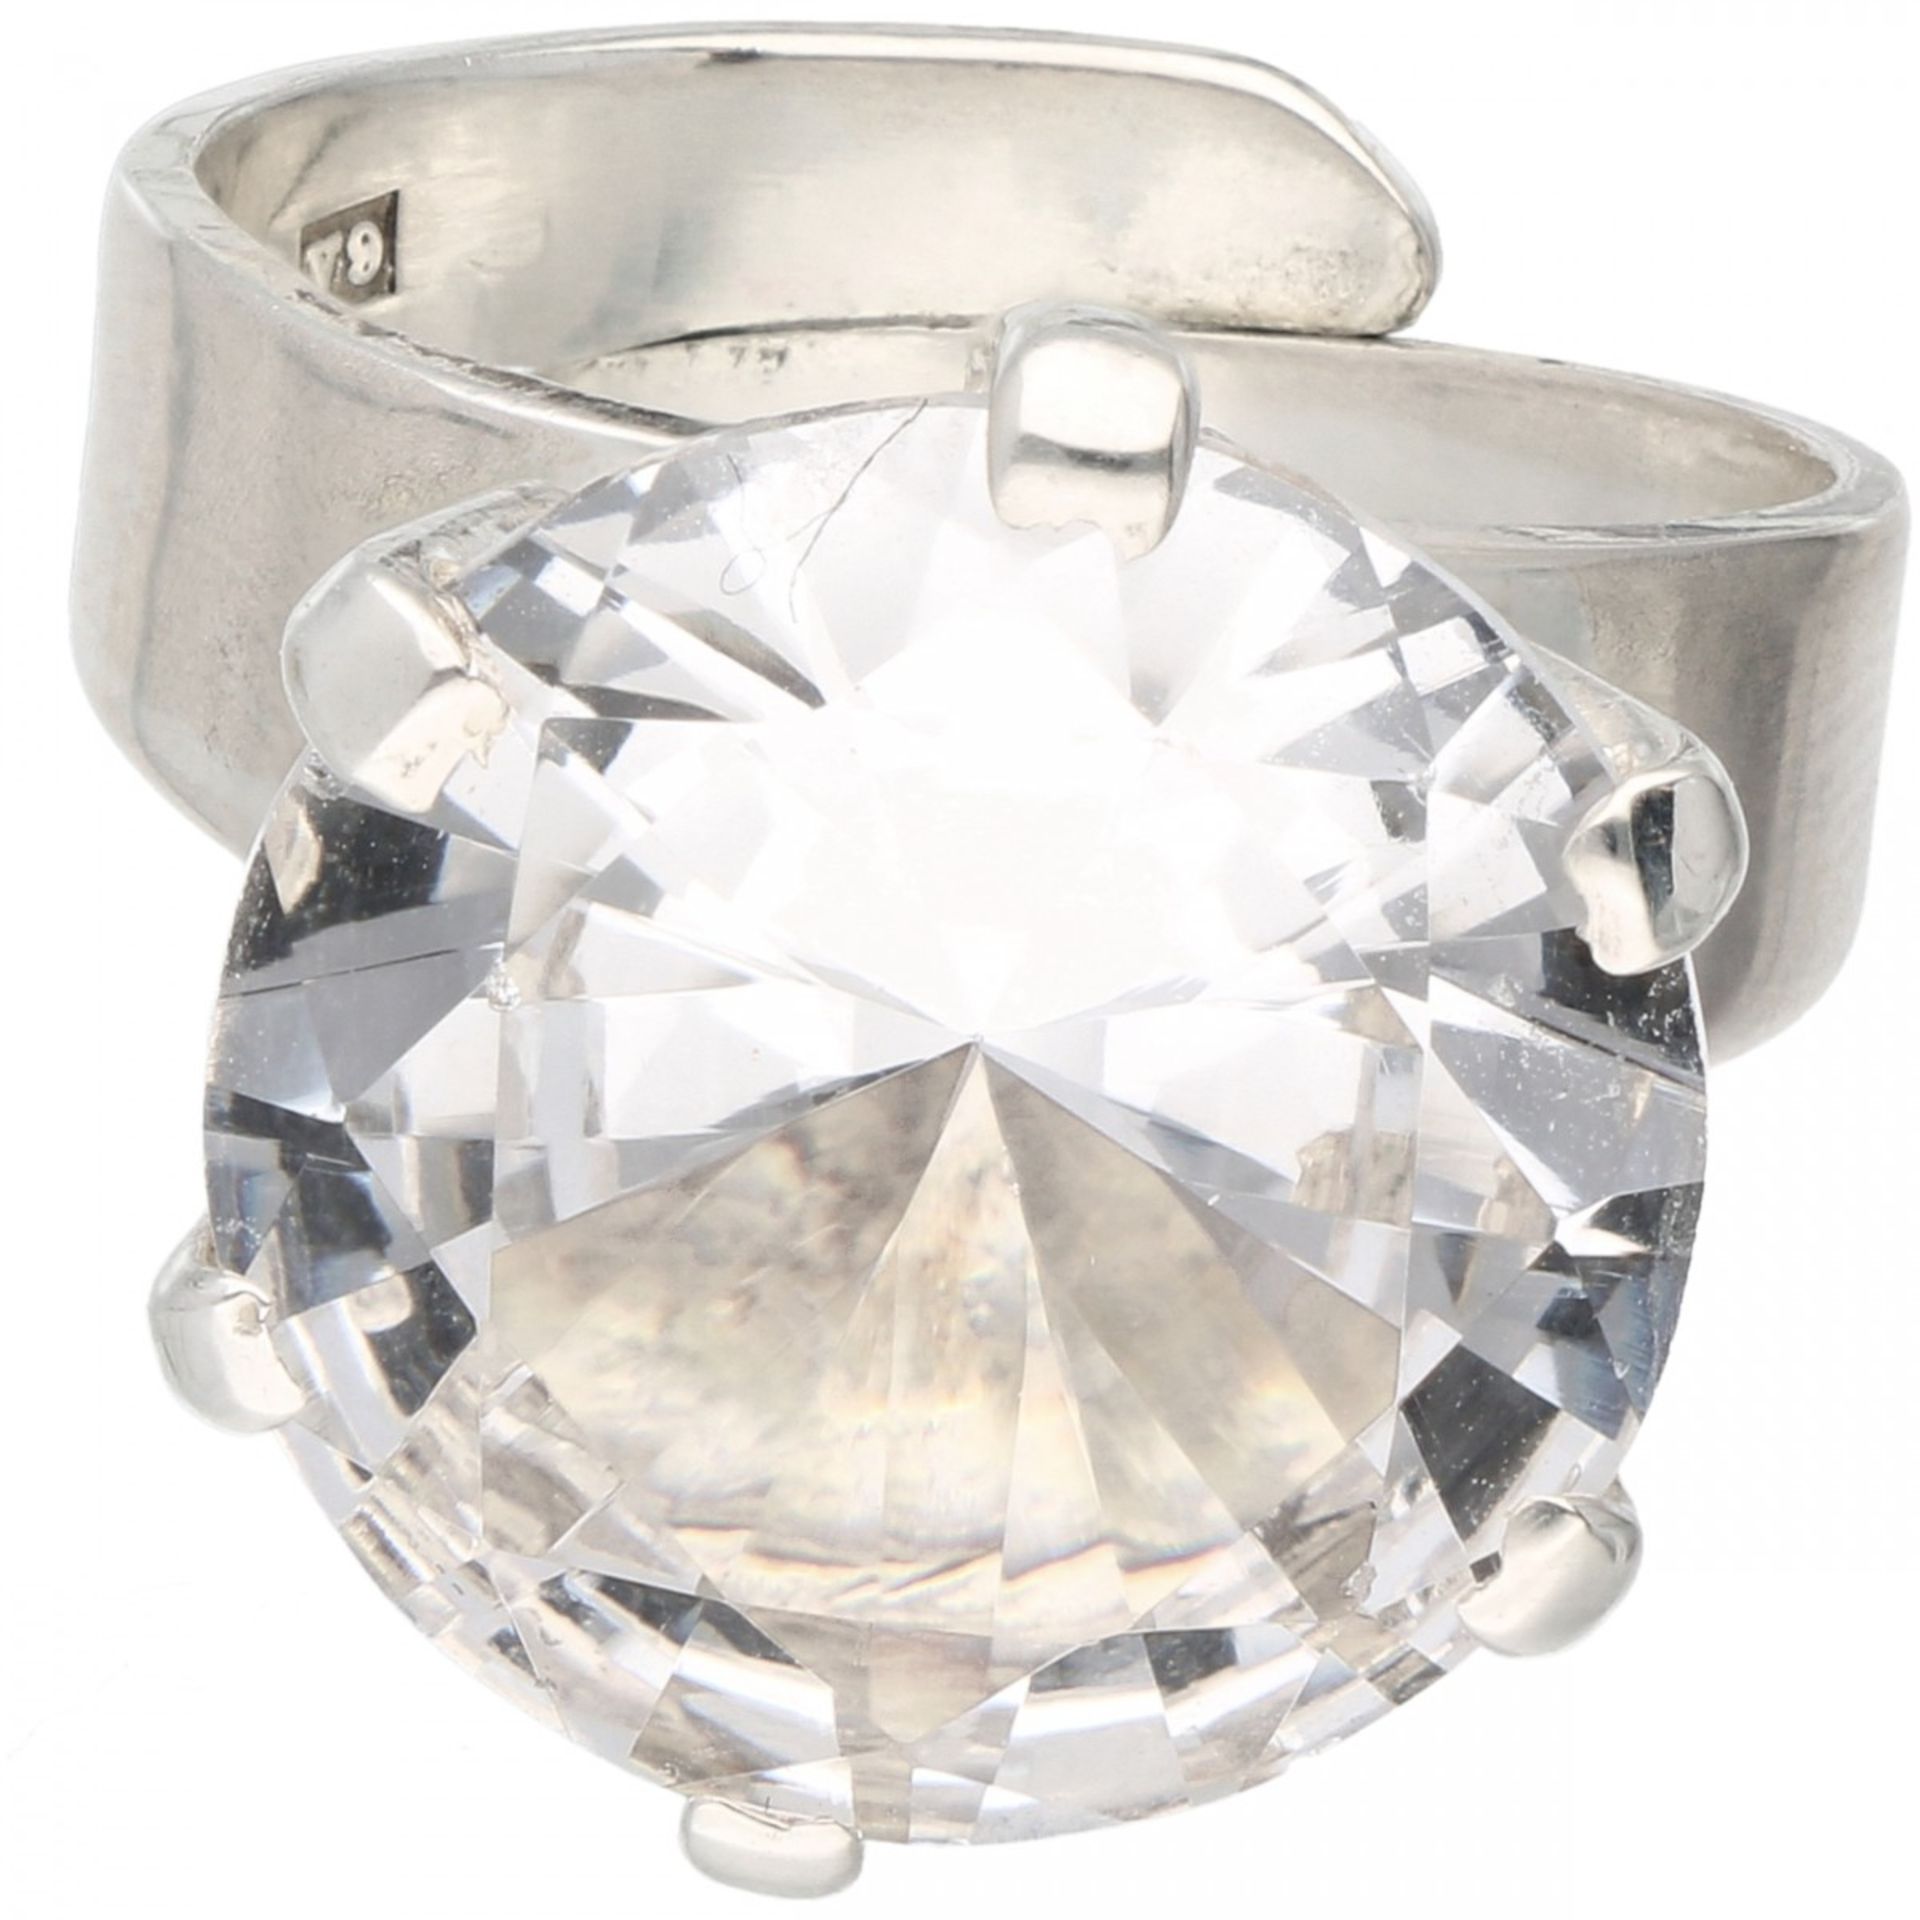 Zilveren Alton solitair ring, met bergkristal - 830/1000. - Image 2 of 4